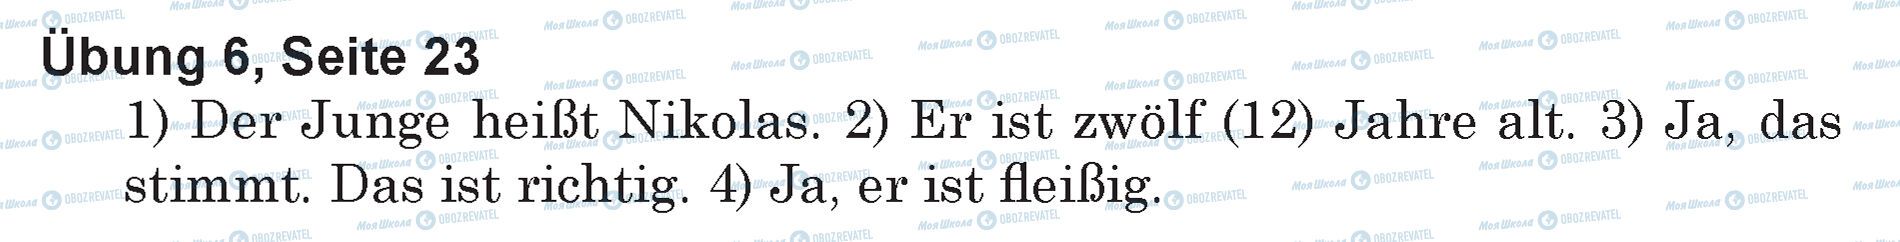 ГДЗ Німецька мова 5 клас сторінка Ubung 6, Seite 23